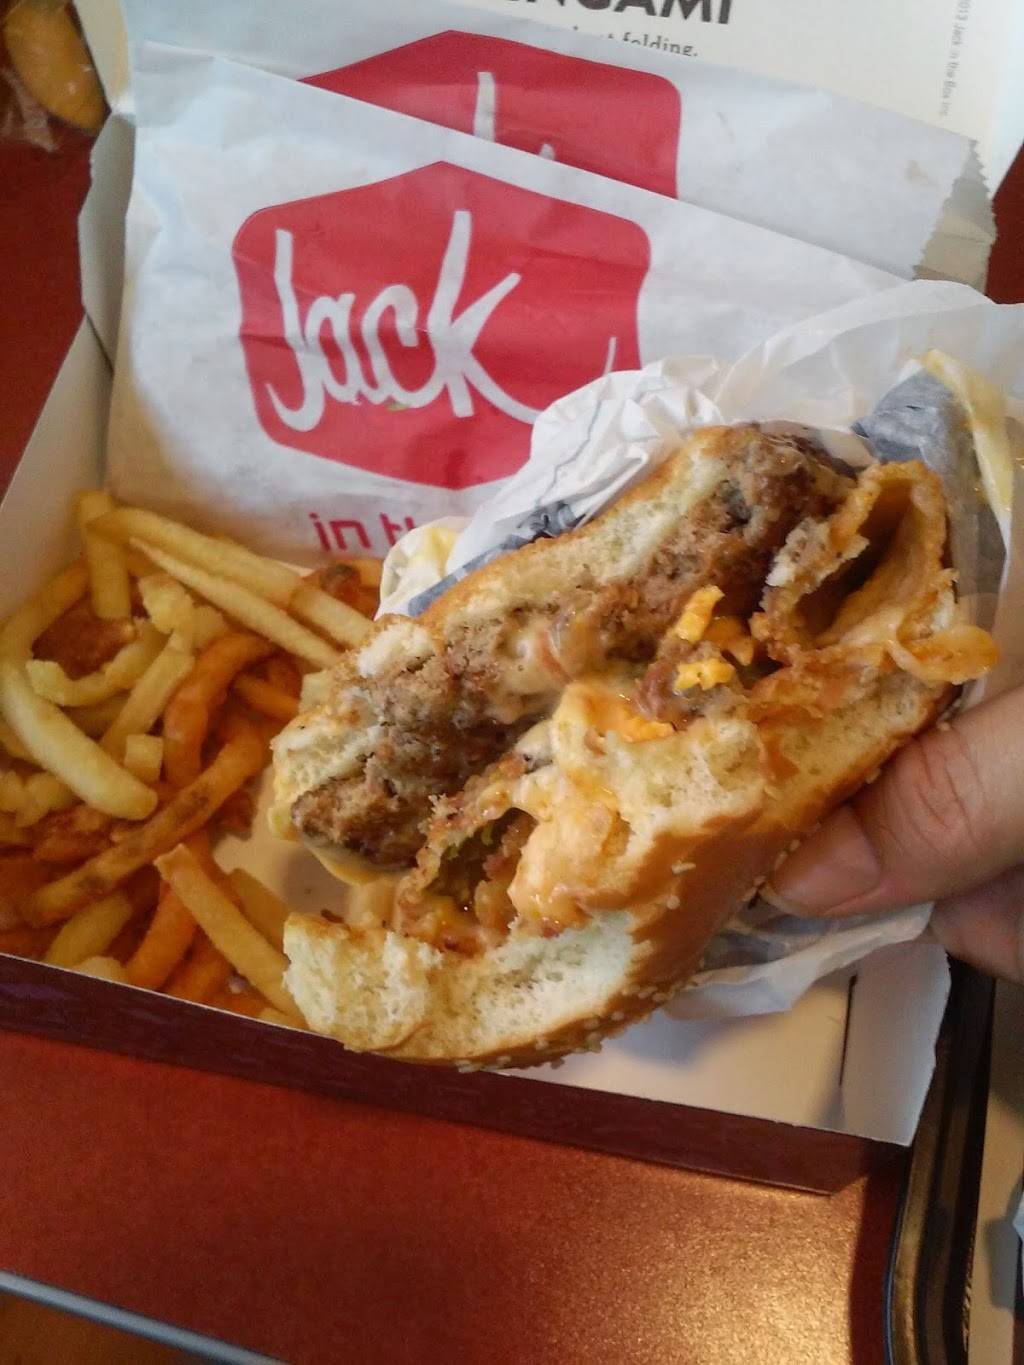 Jack in the Box | restaurant | 1916 E March Ln, Stockton, CA 95210, USA | 2096628317 OR +1 209-662-8317